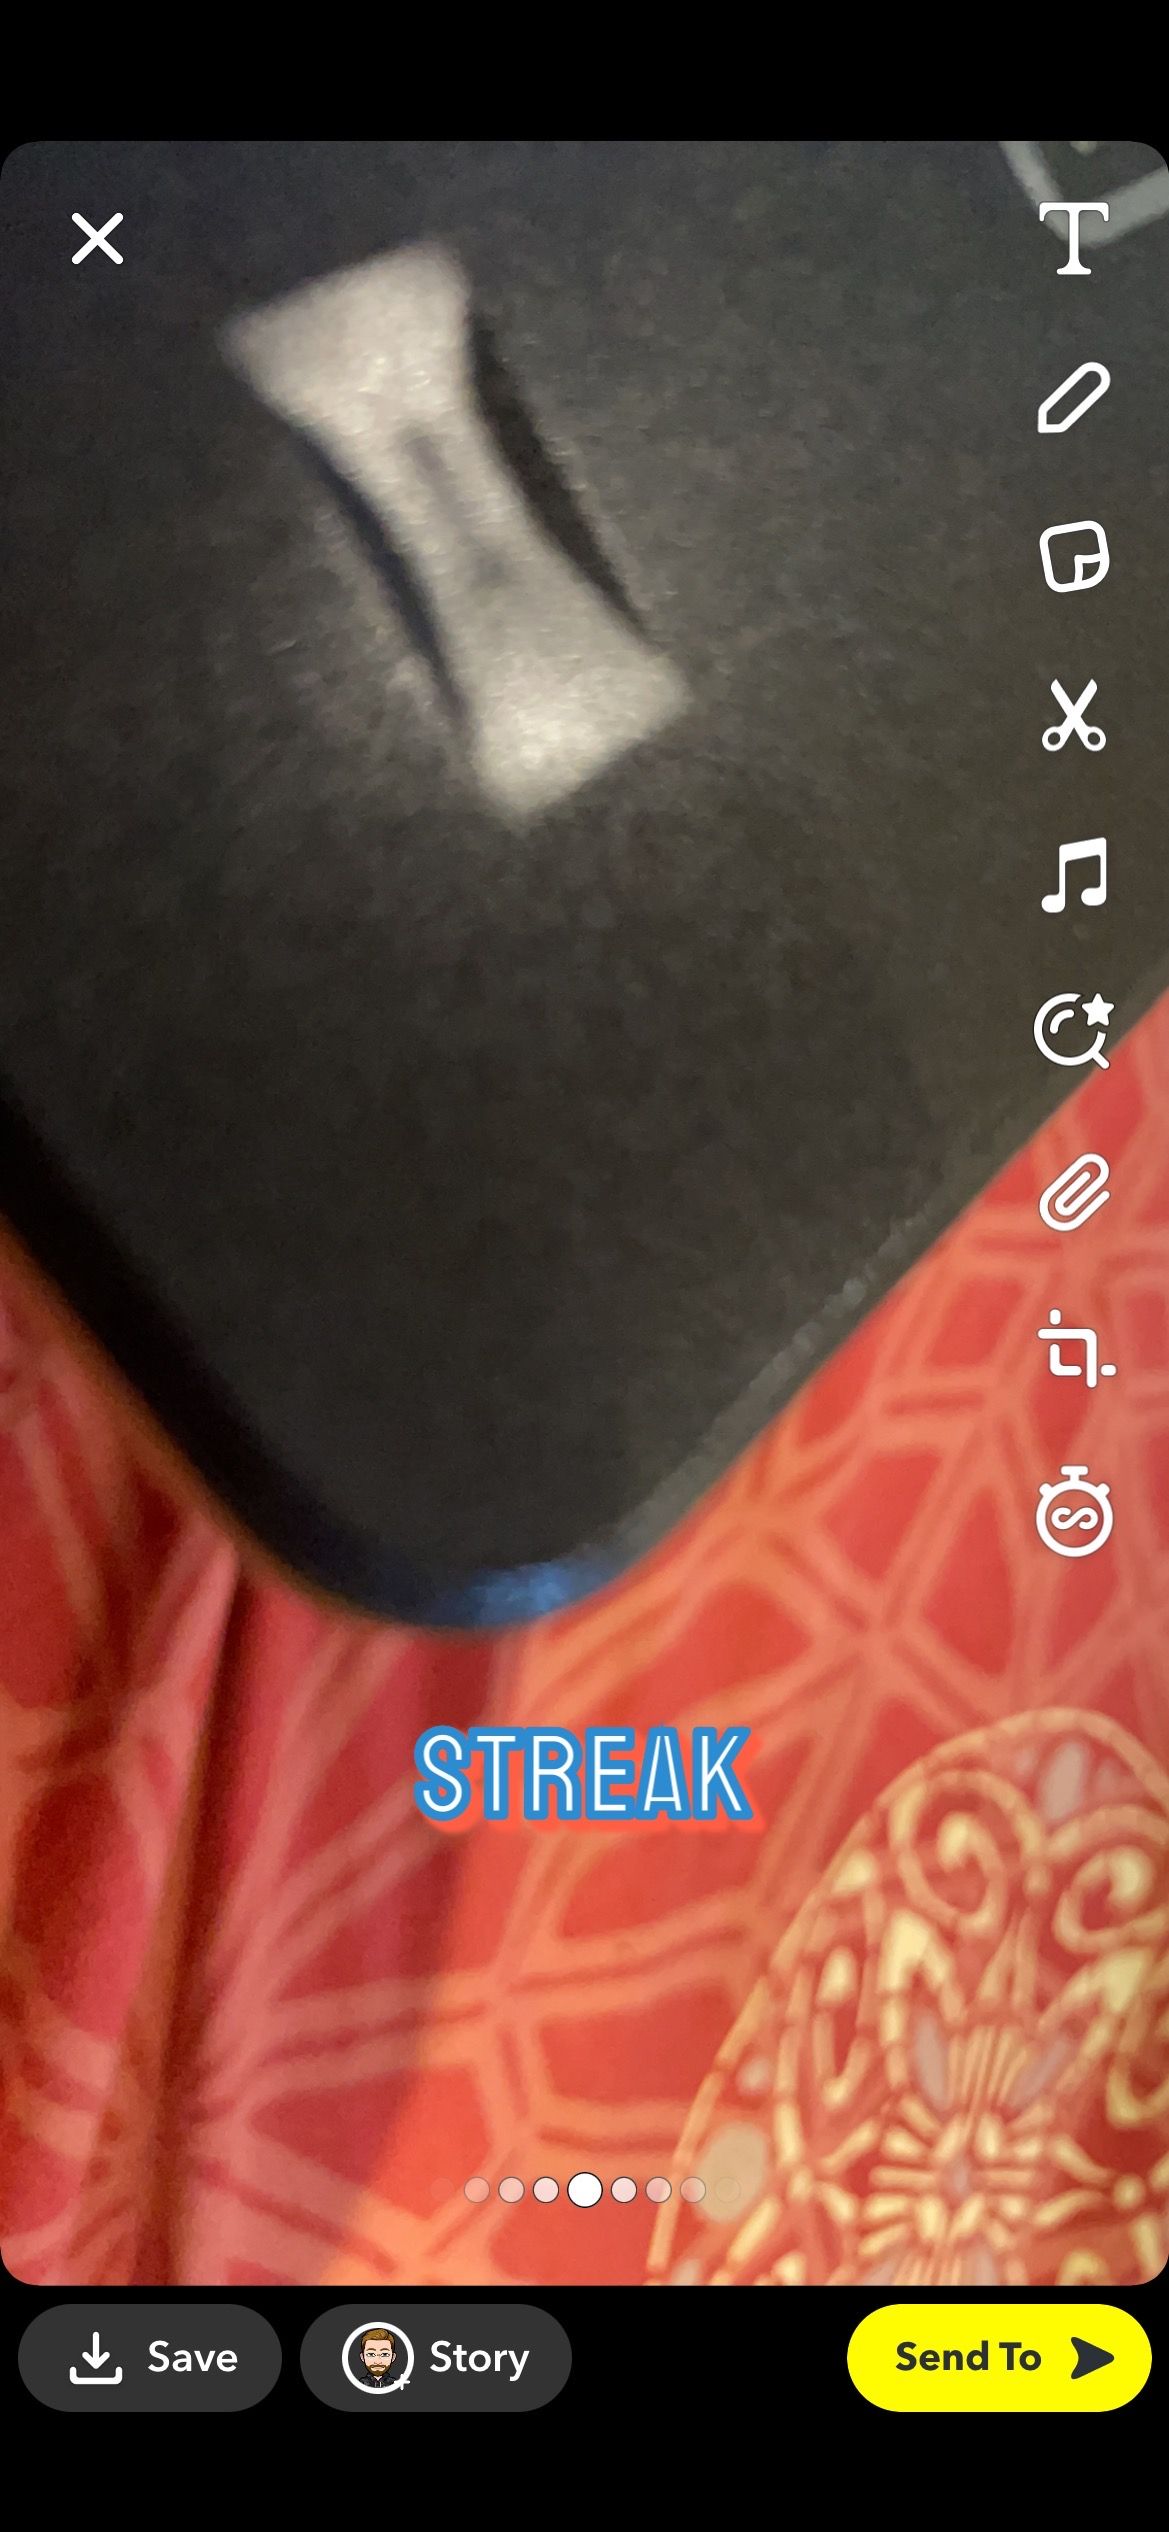 Sending streaks on Snapchat